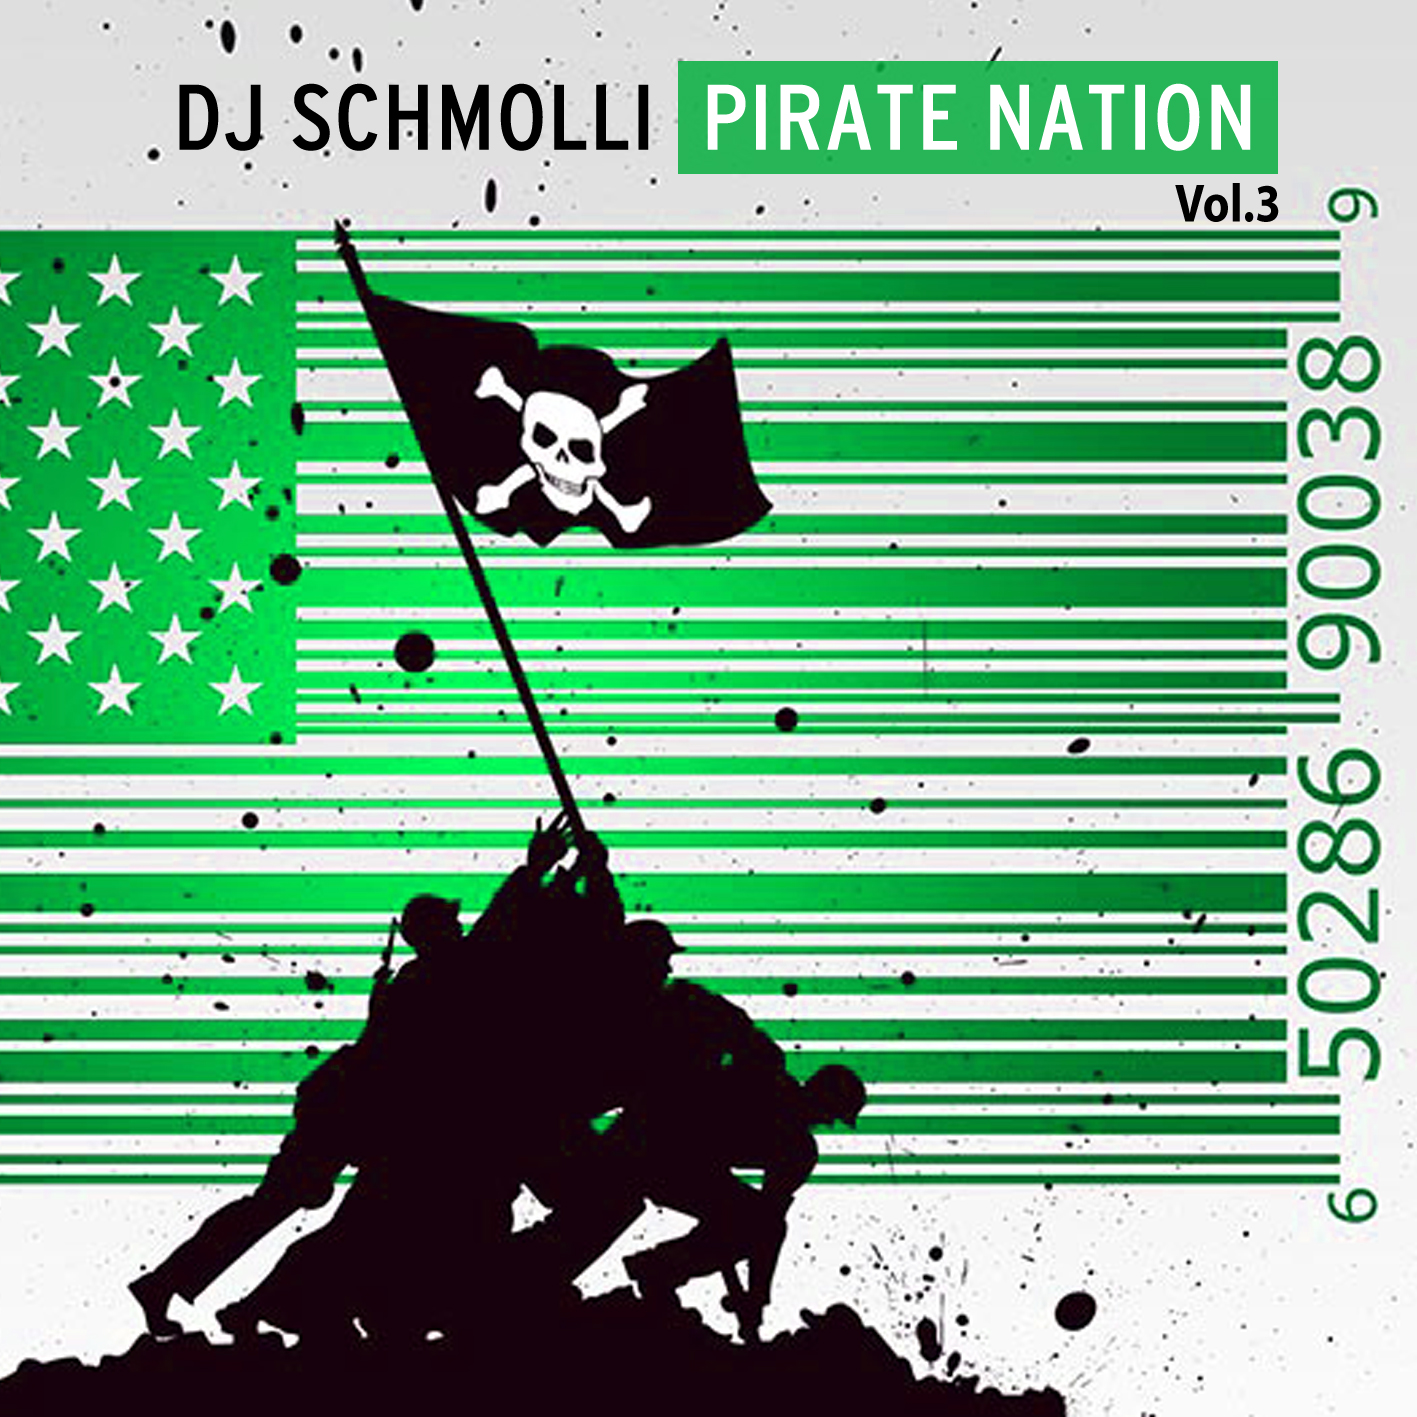 http://1.bp.blogspot.com/-QpQvx2Od8ok/T7EPOkdpyeI/AAAAAAAAAuc/TTPpYVvxoOQ/s1600/DJ+Schmolli+-+Pirate+Nation+Vol.3.jpg